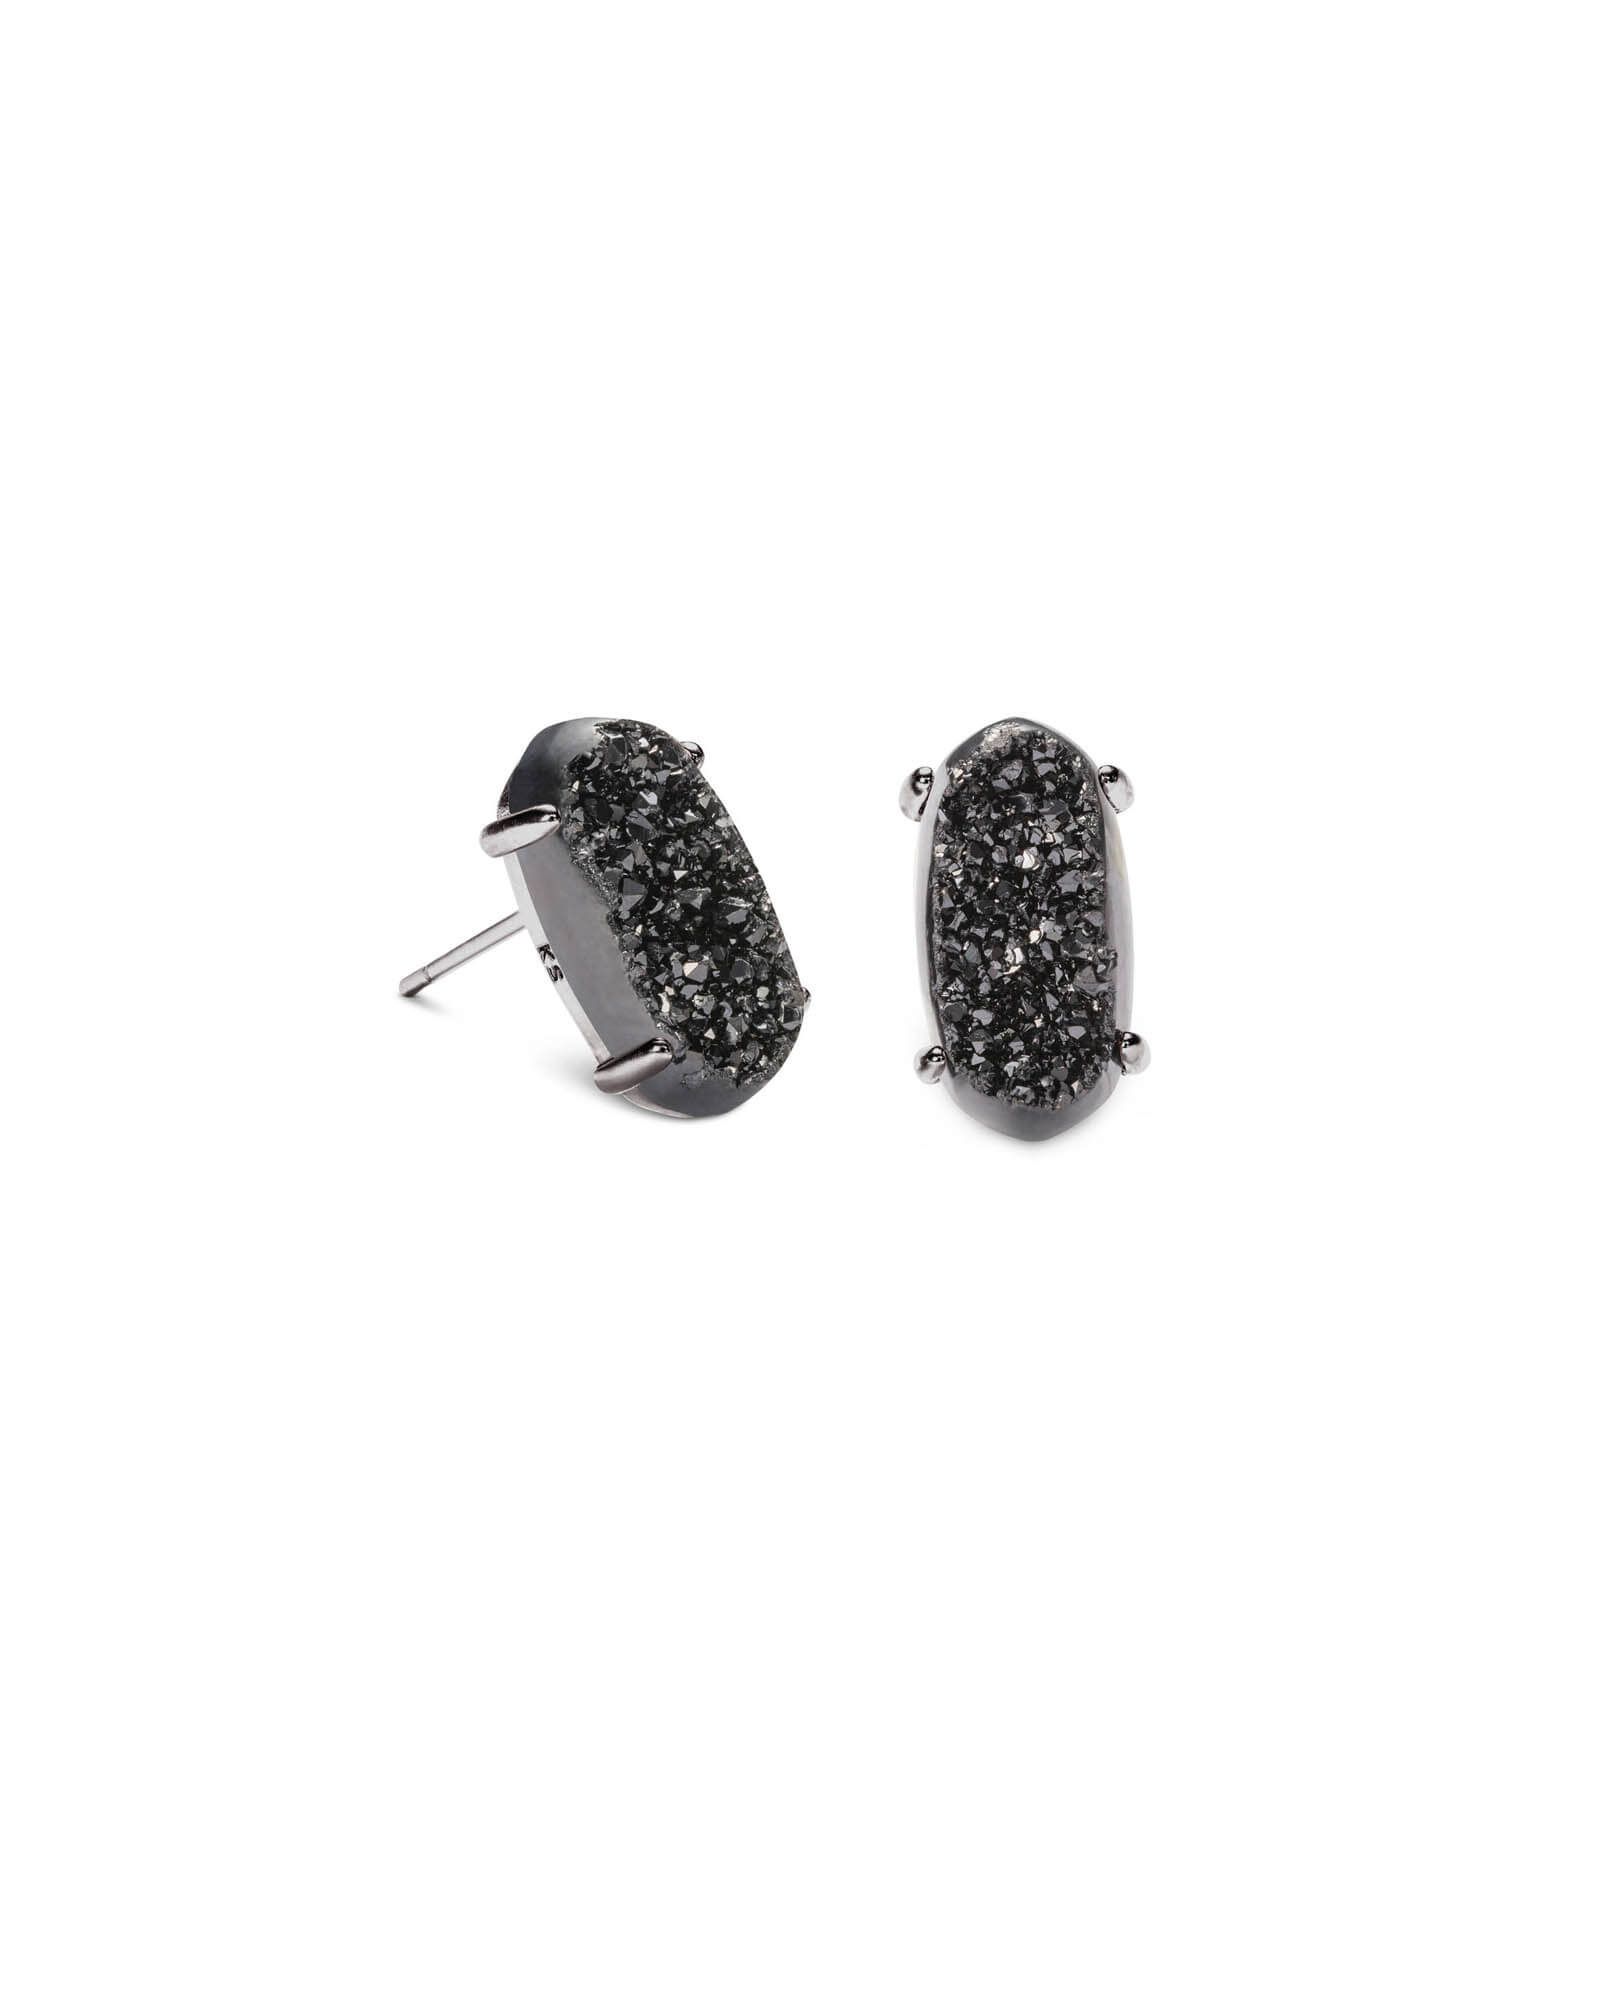 Betty Gunmetal Stud Earrings in Black Drusy | Kendra Scott | Kendra Scott